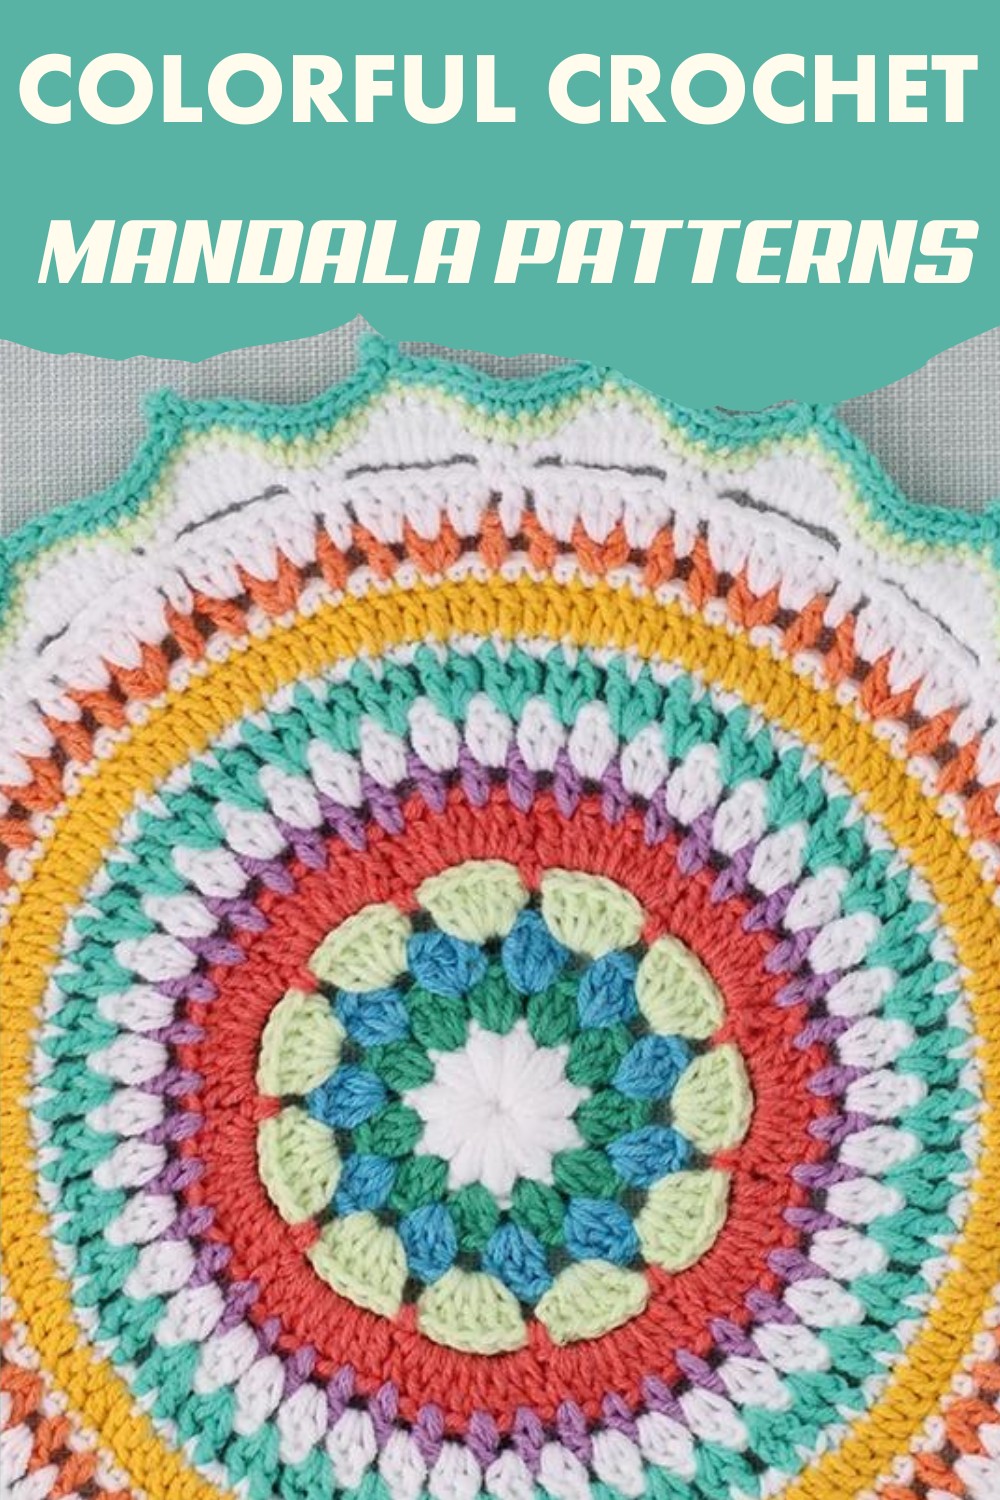 Colorful crochet mandala patterns